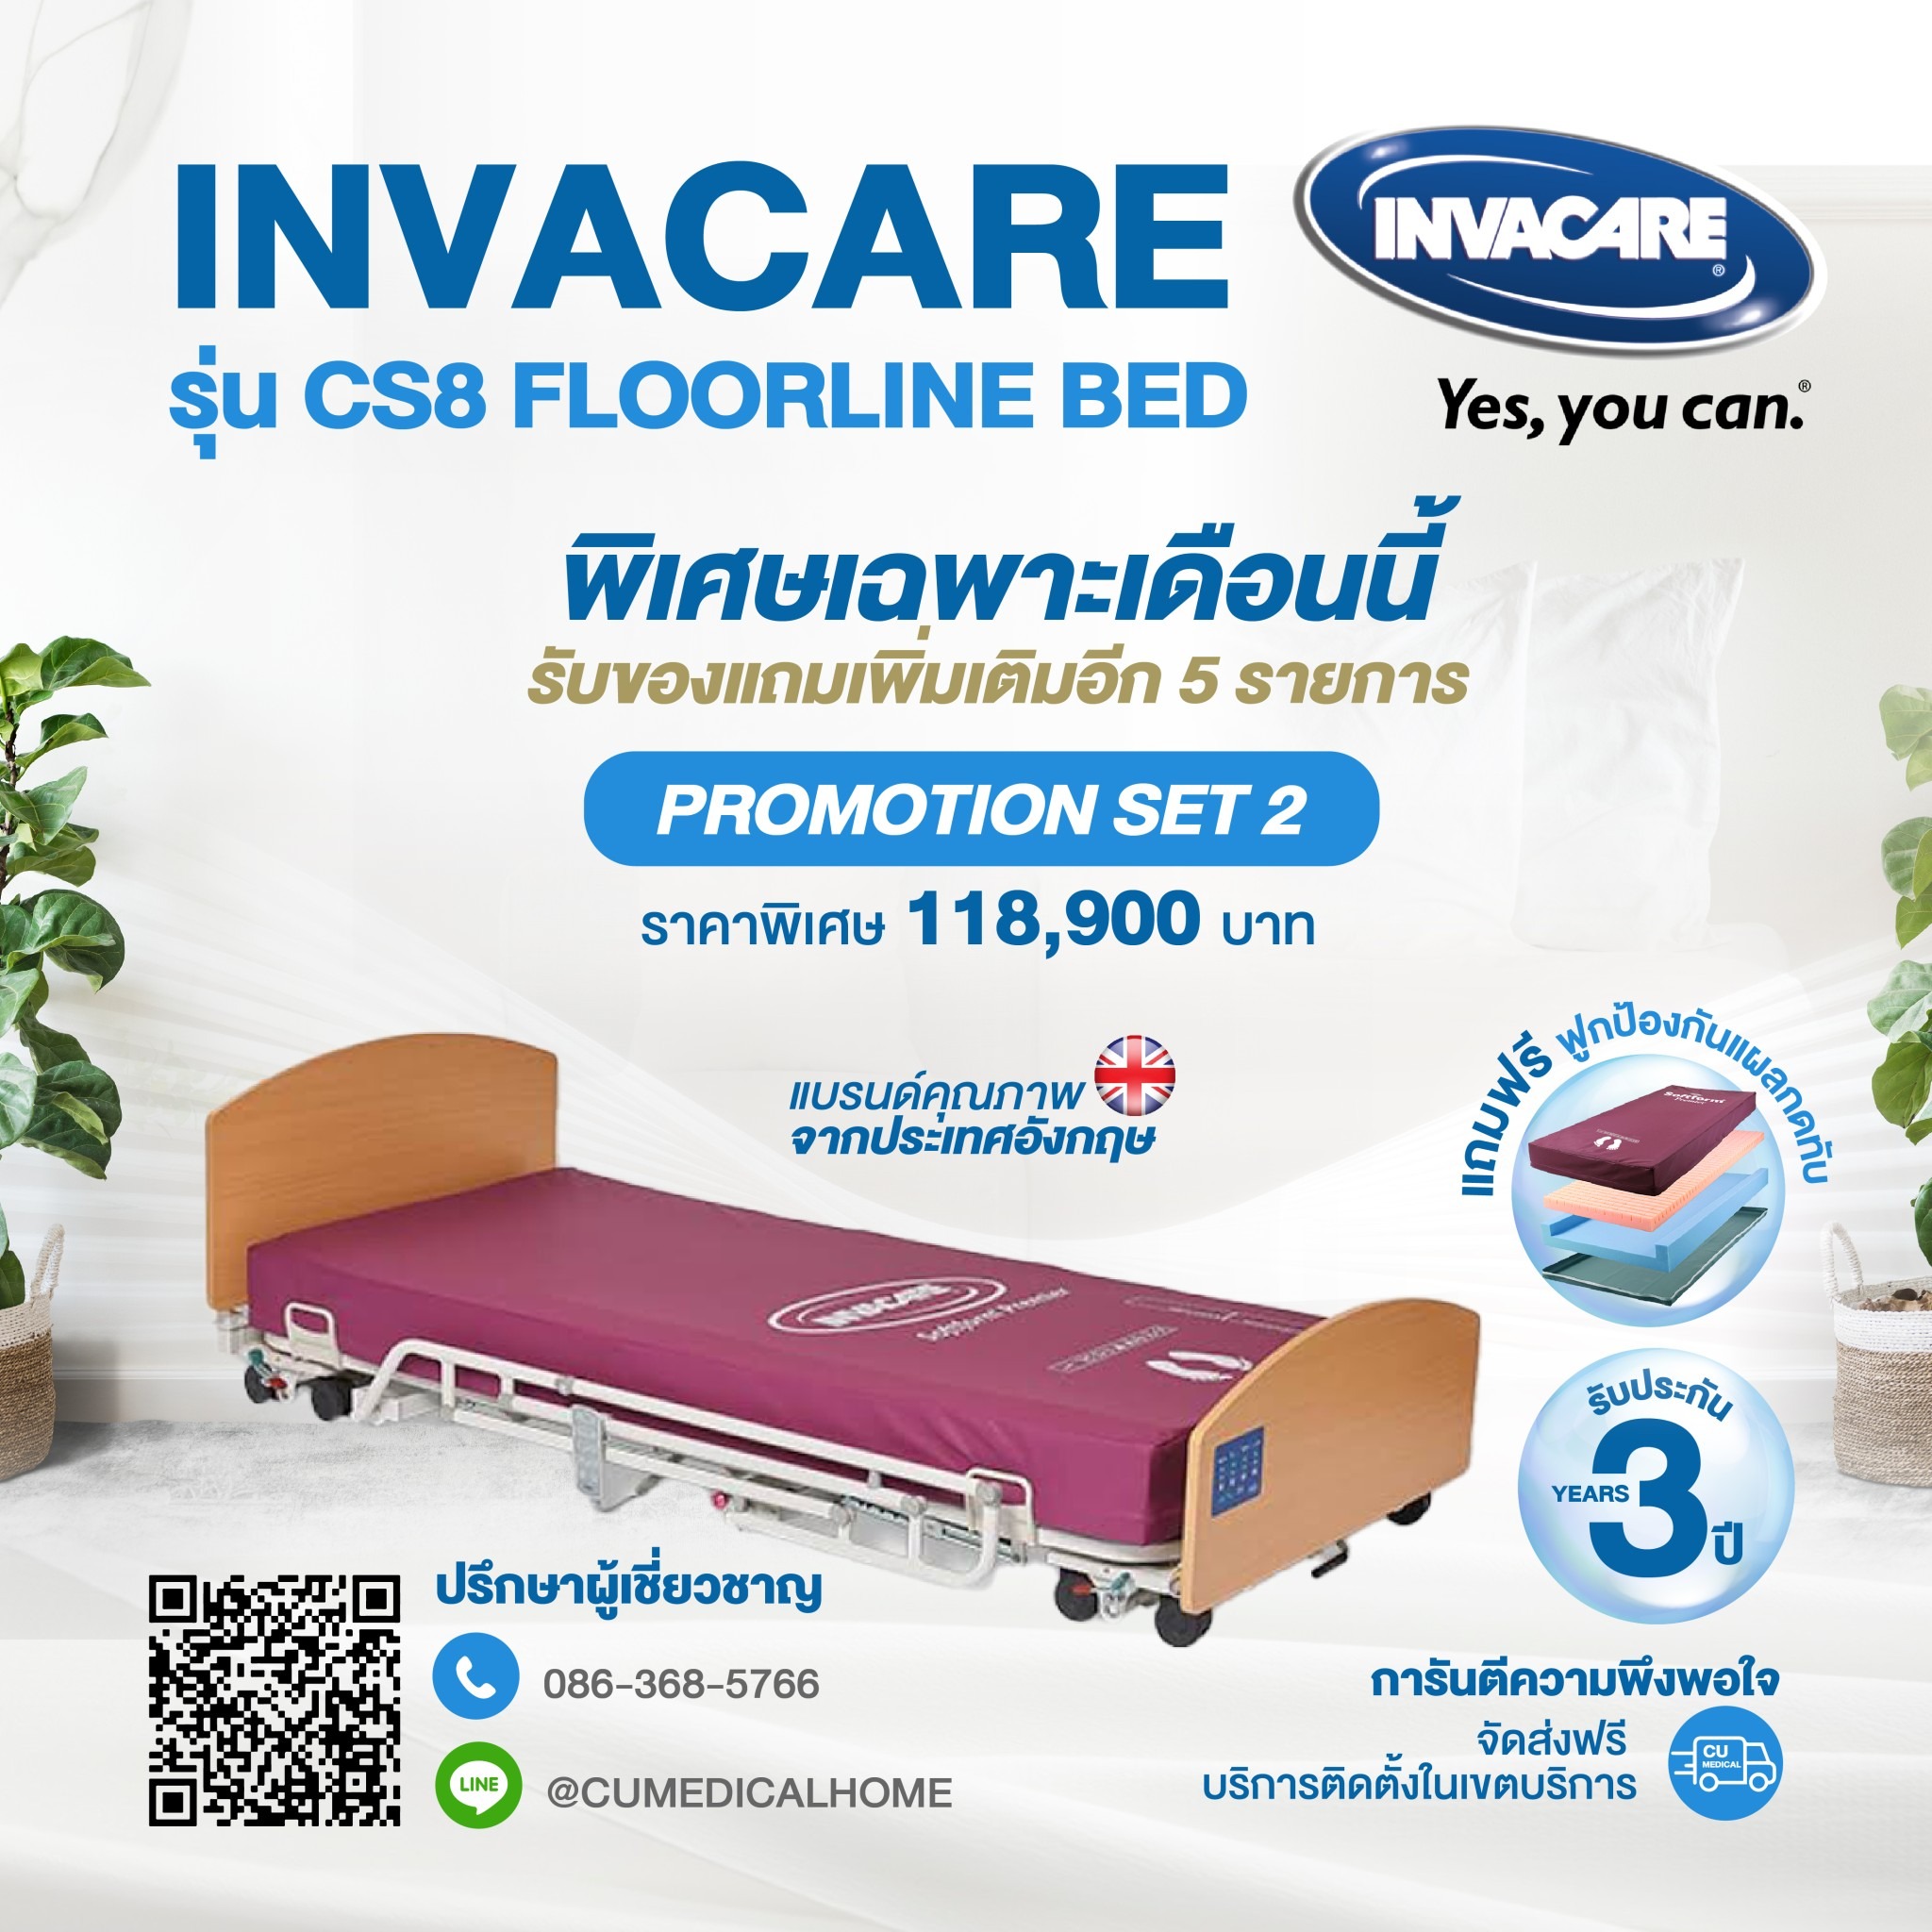 เตียงผู้สูงอายุไฟฟ้า Invacare CS8 FLOORLINE BED พร้อมฟูกที่นอนป้องกันแผลกดทับ ยี่ห้อ Invacare Softform Premier